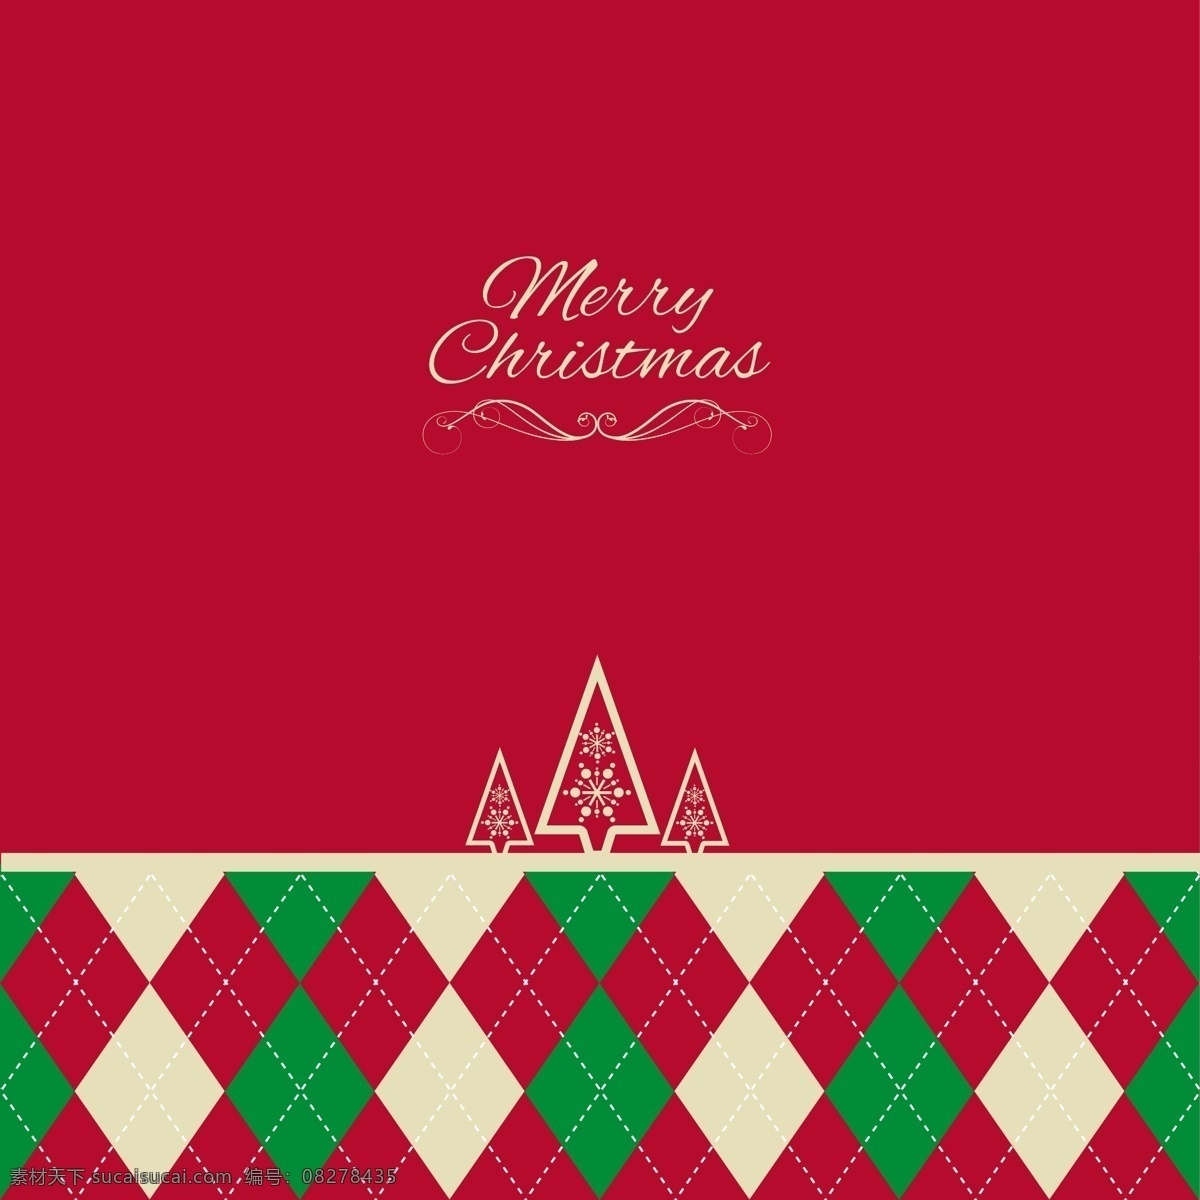 圣诞 几何 菱形 背景 圣诞节 快乐 冬季 庆典 节日 假期 季节 十二月